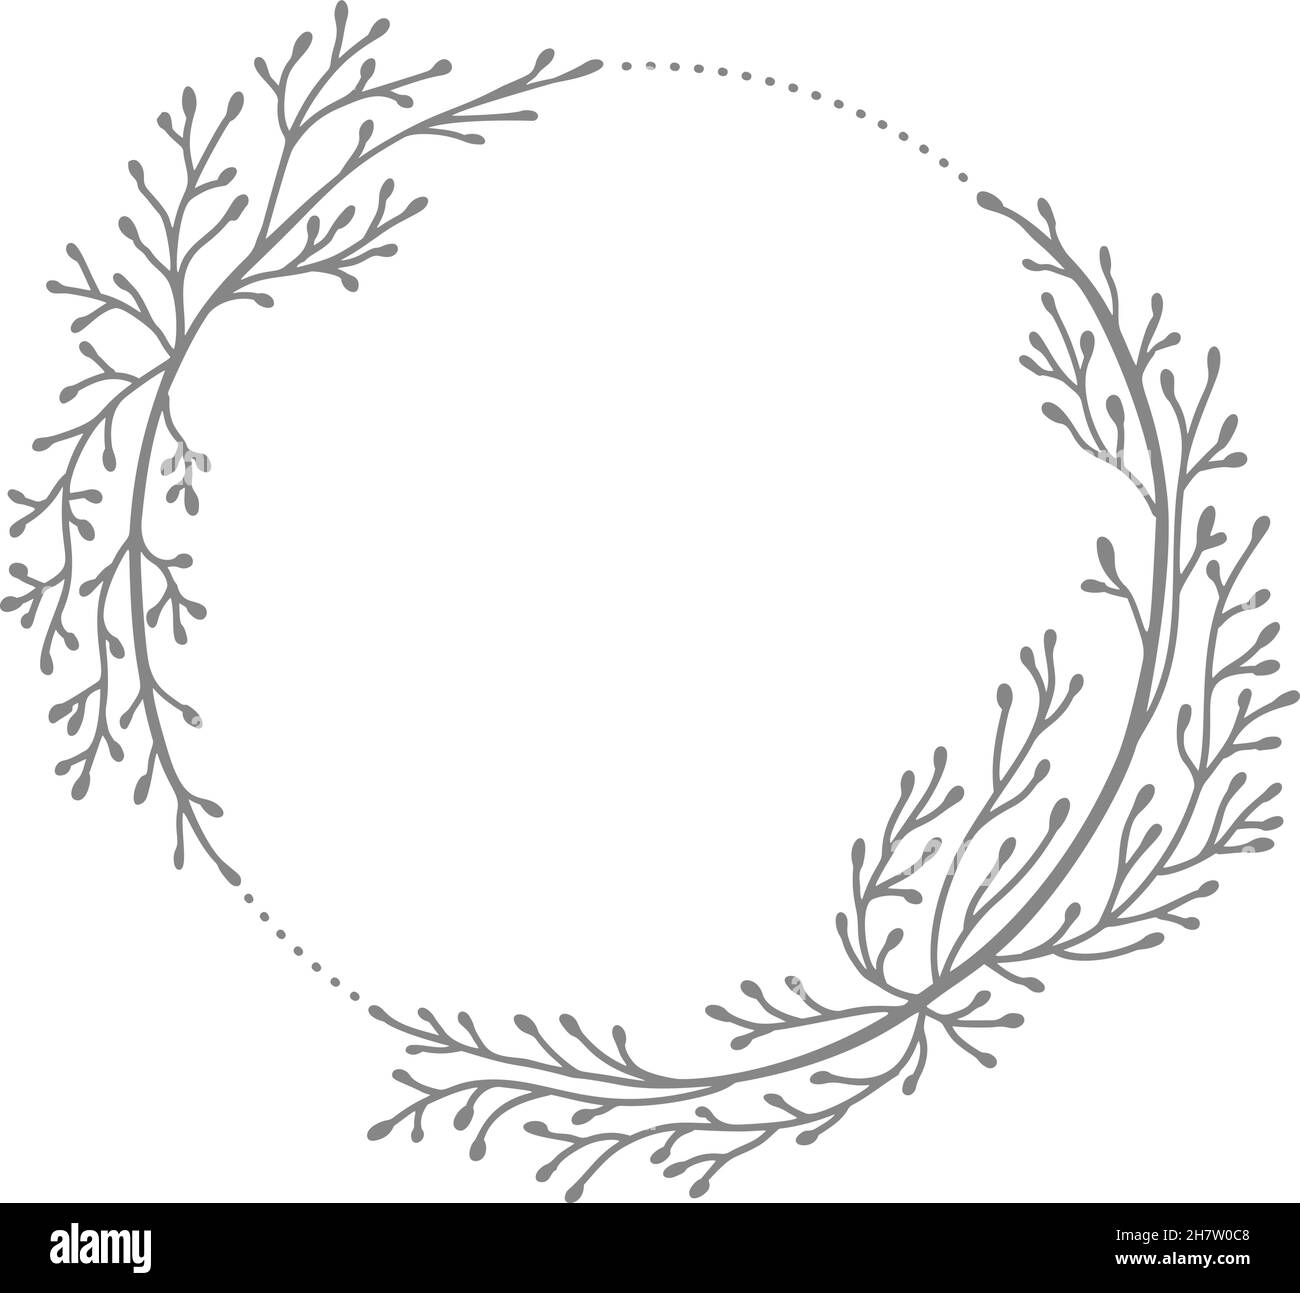 Matrimonio vettoriale a cornice rotonda disegnato a mano. Corona floreale con foglie, rami elementi decorativi per design. Inchiostro, vintage e stile rustico Illustrazione Vettoriale